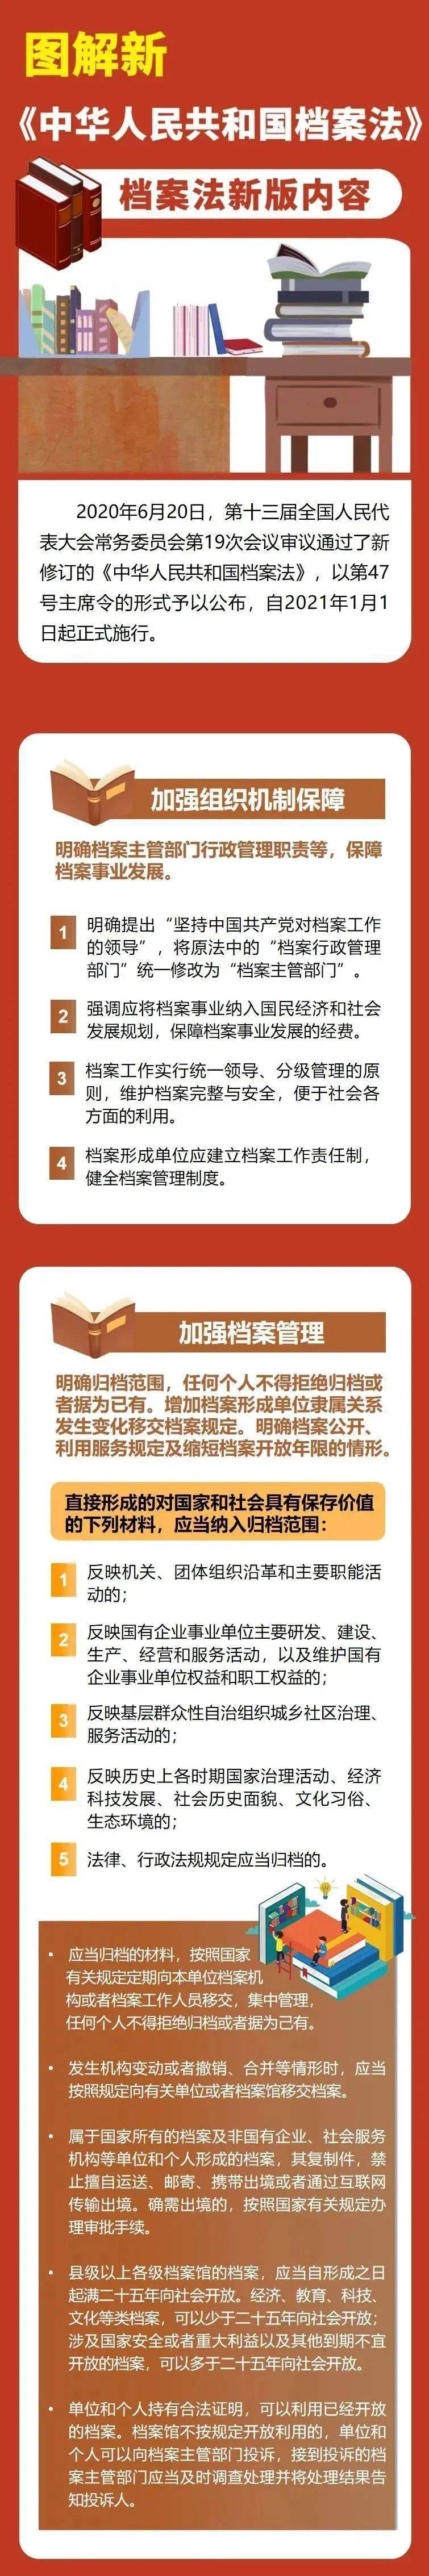 图解《中华人民共和国档案法》_神农架_应急_来源